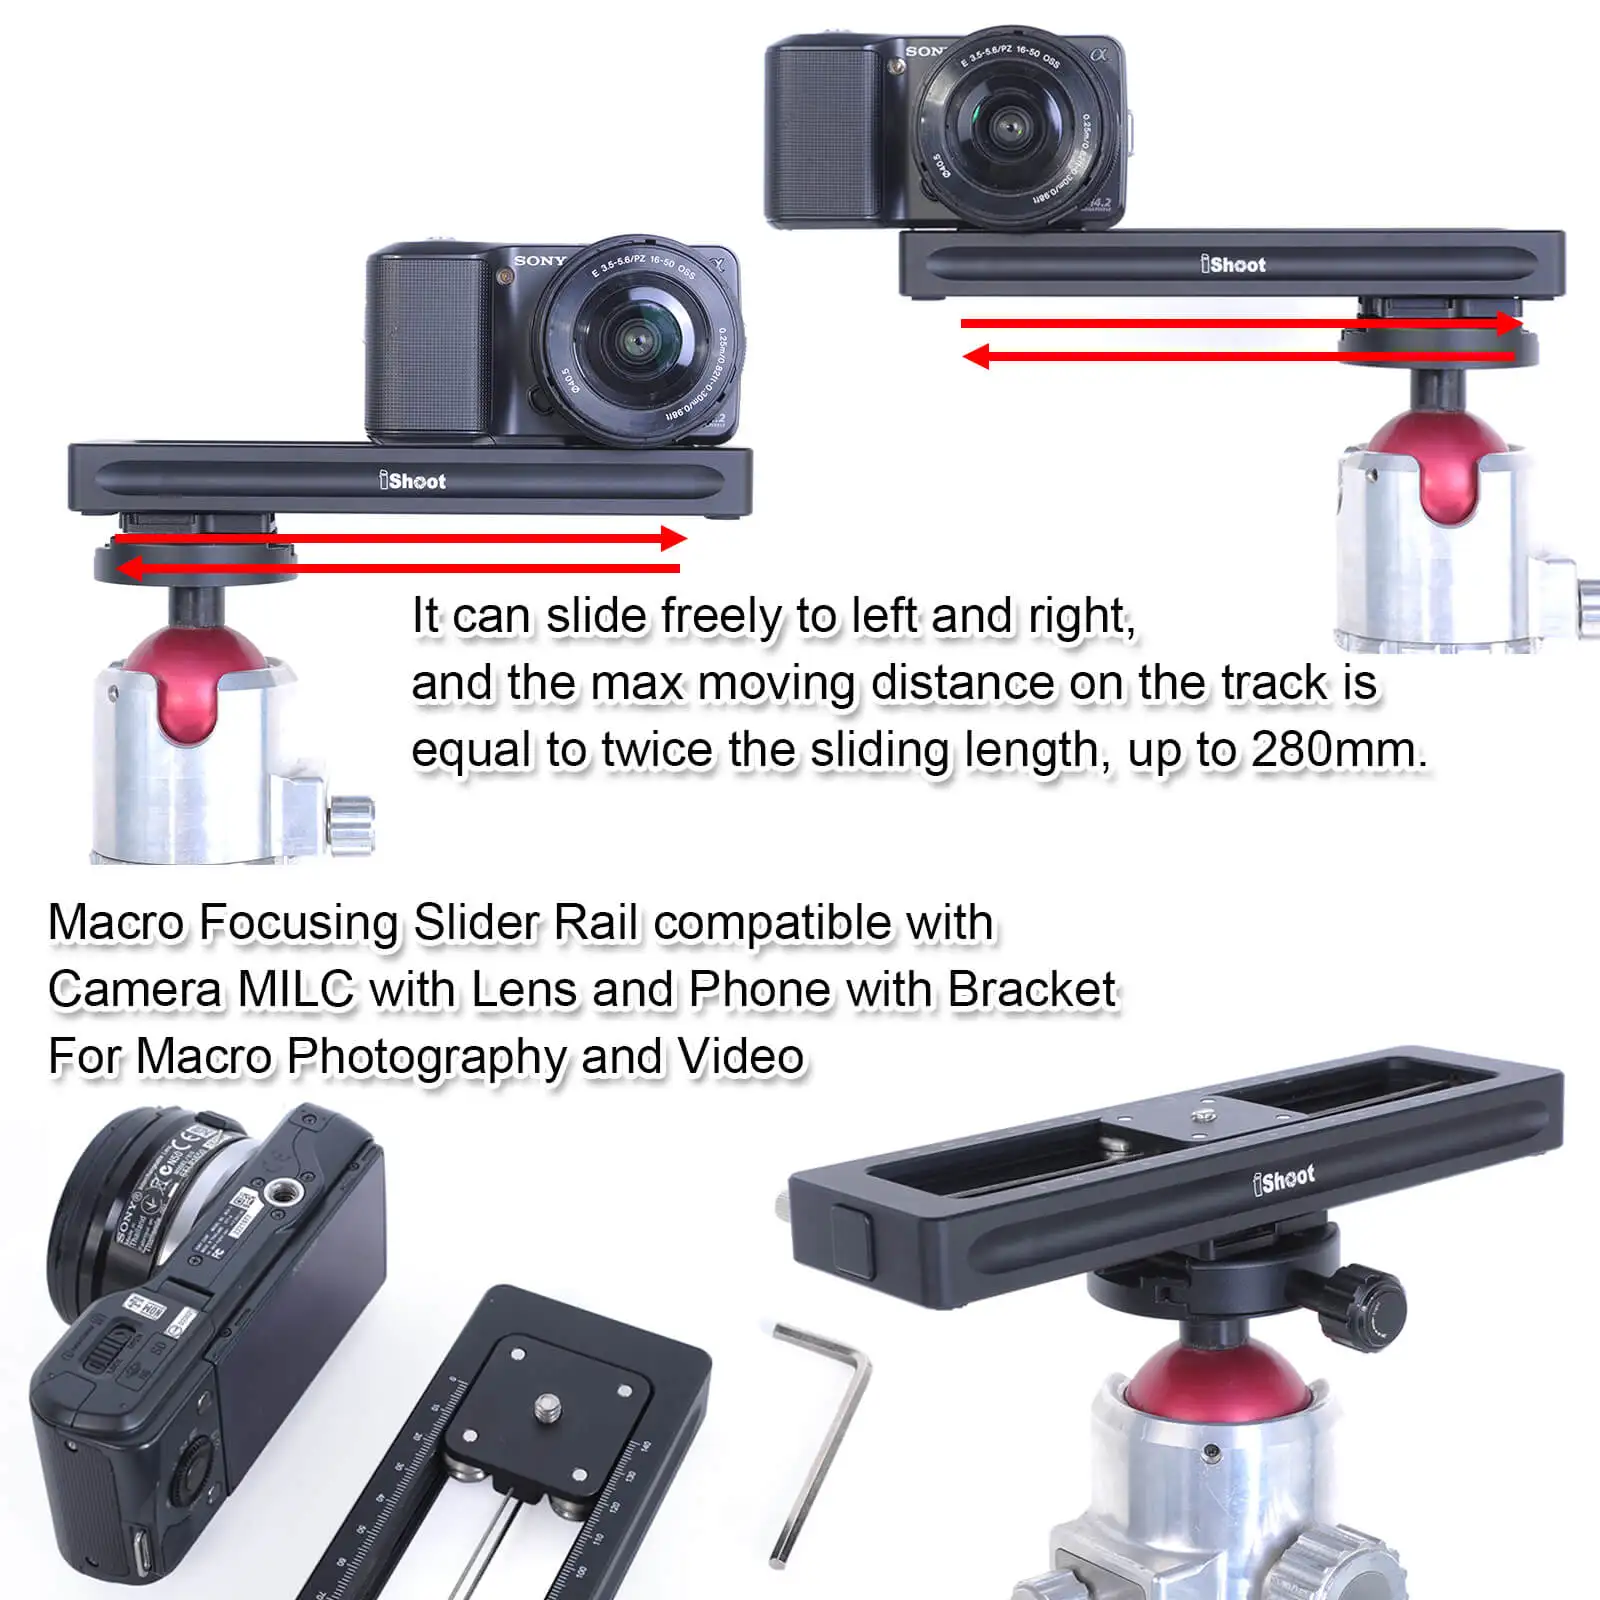 Макро фокусировка рельс слайдер для камеры MILC и телефона, портативный демпфирования видео стабилизатор трек для макросъемки и видео